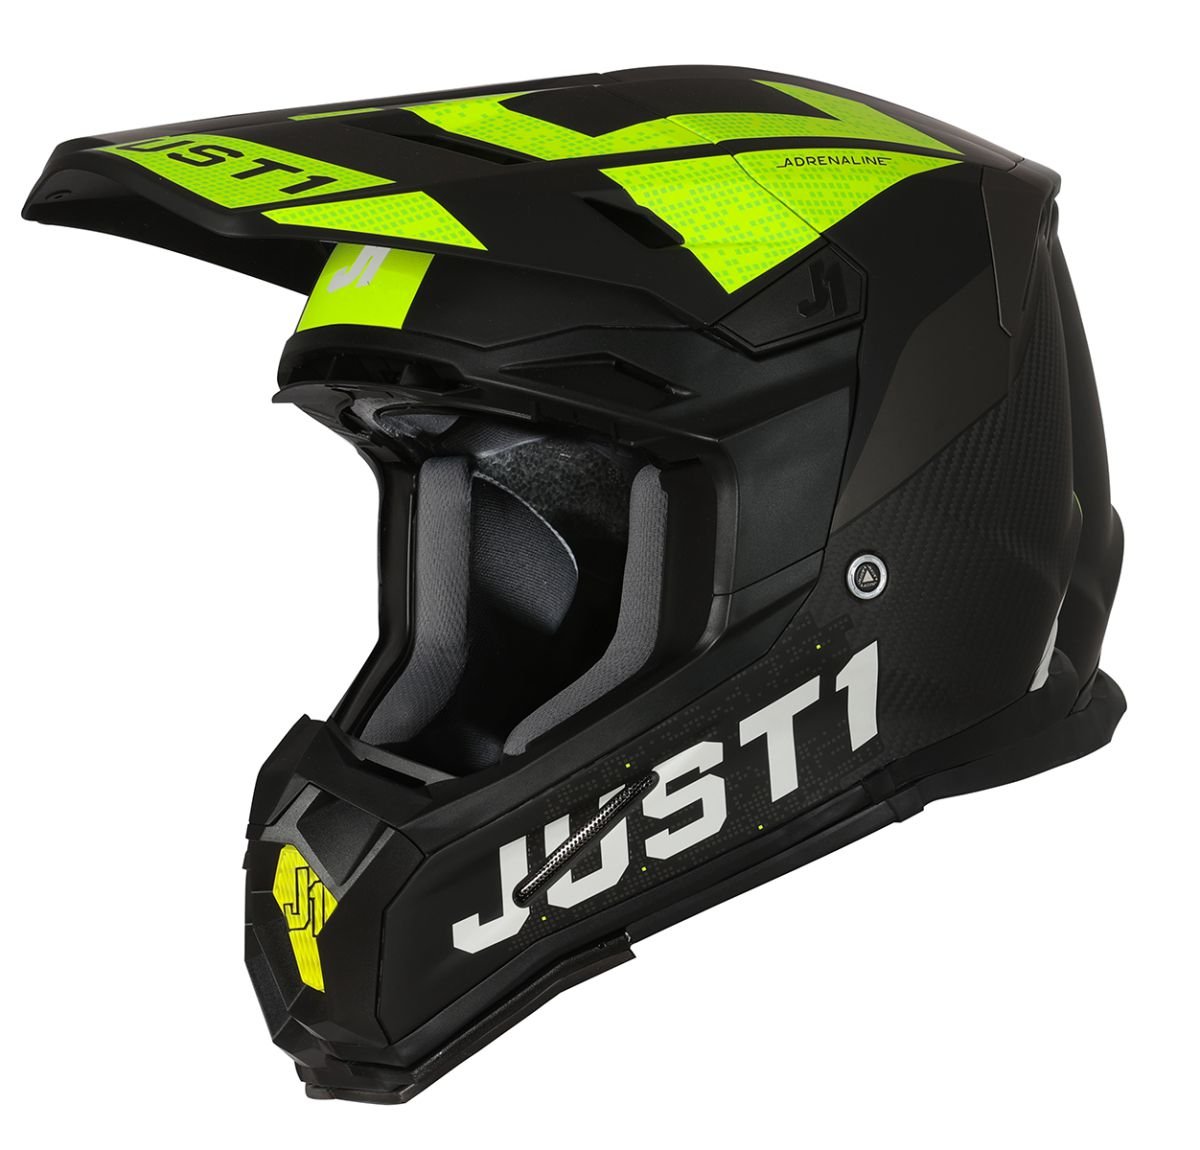 Image of Just1 Helmet J-22 Adrenaline Black Yellow Fluo Carbon Matt Offroad Helmet Size M ID 8055727450326